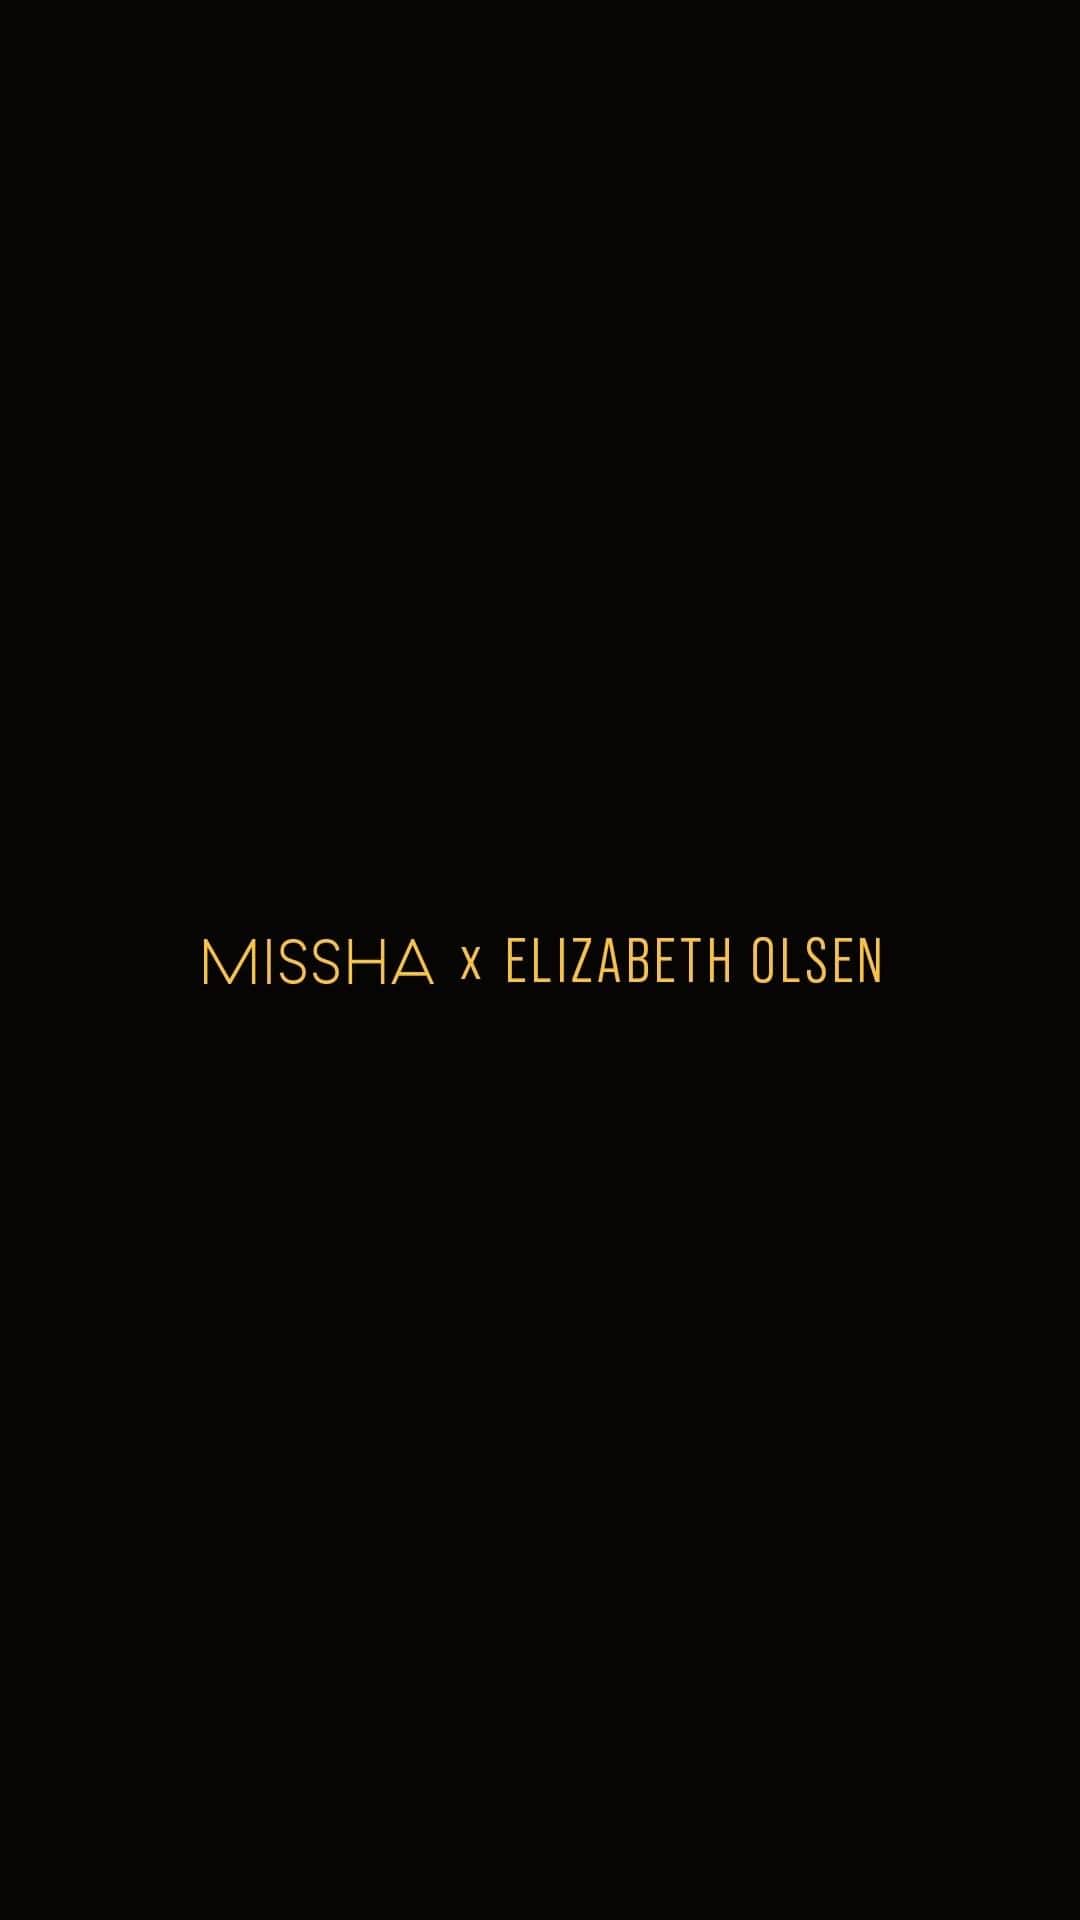 미샤 MISSHAのインスタグラム